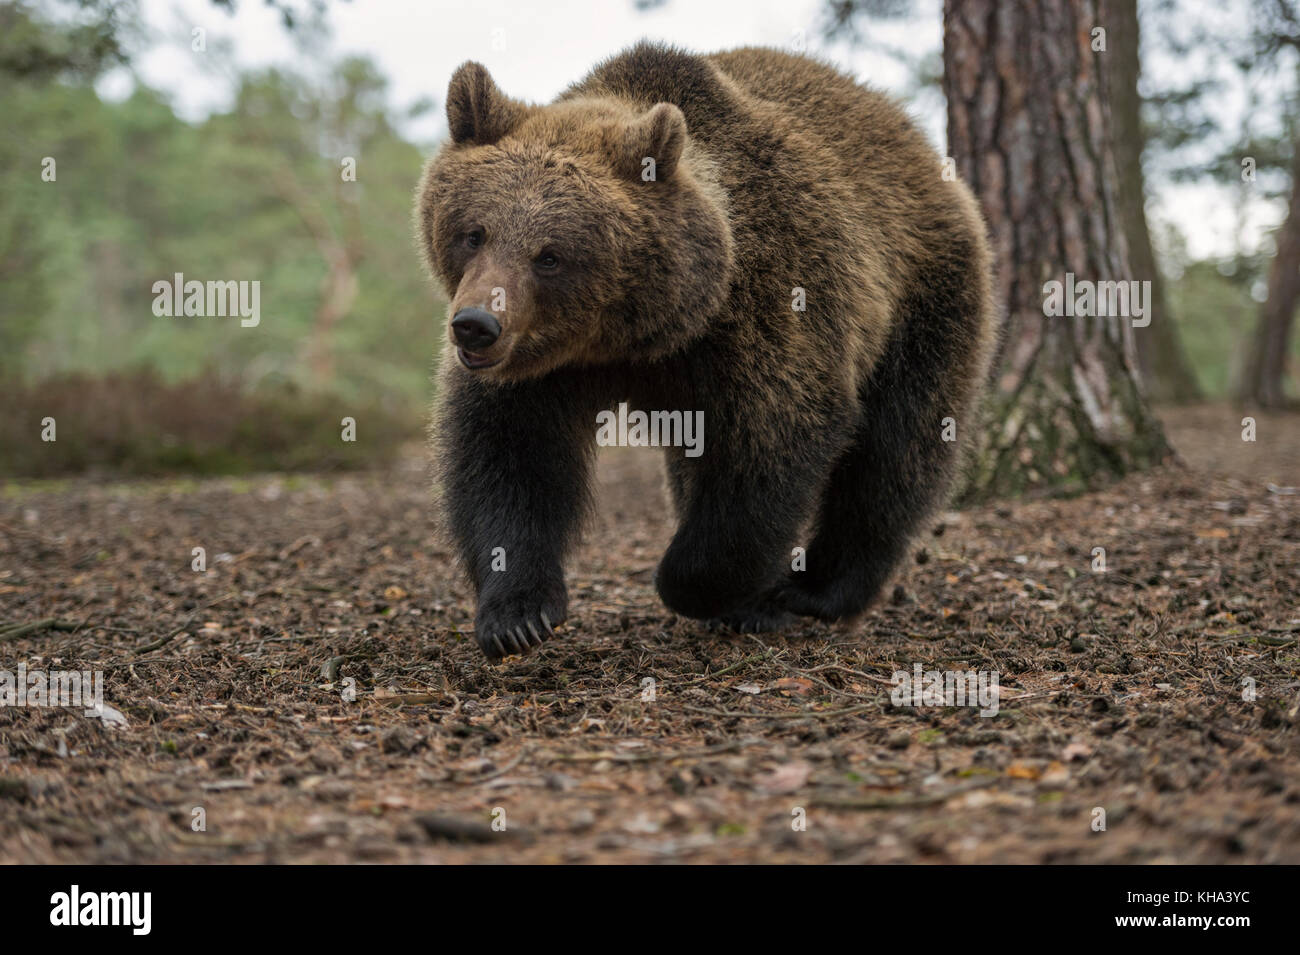 Orso bruno / Braunbär ( Ursus arctos ), adolescente cub, corre veloce attraverso una foresta, in una fretta,sembra carino e divertente, l'Europa. Foto Stock